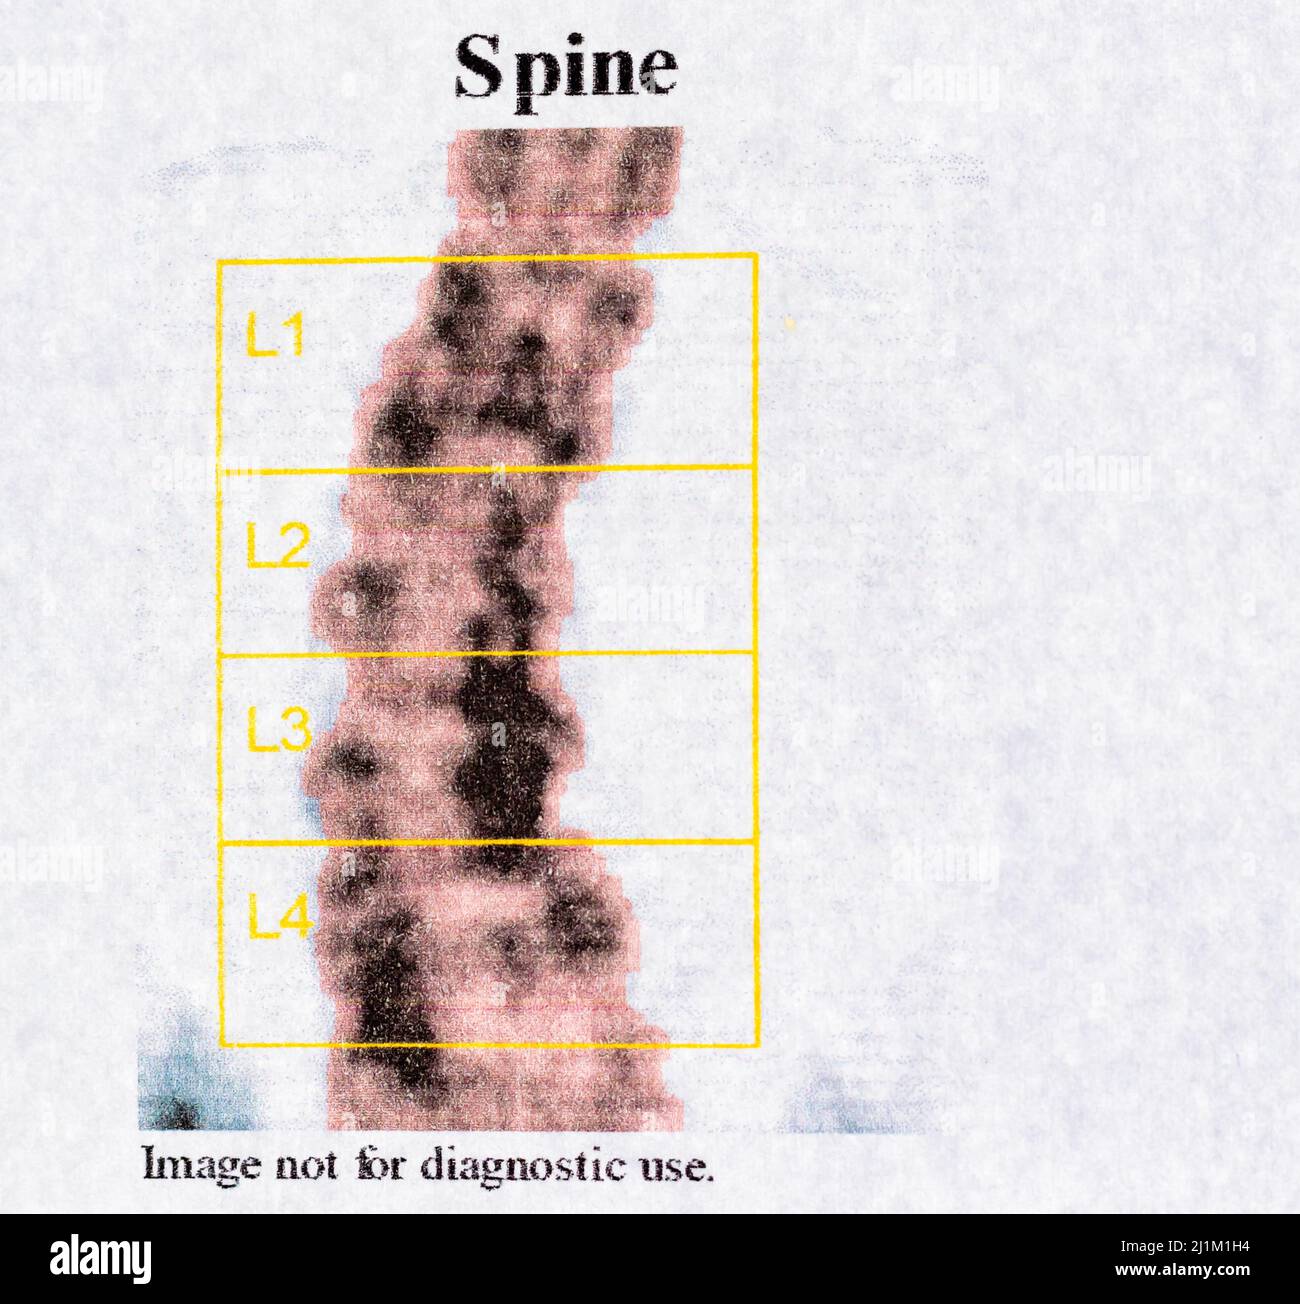 Foto da vicino del test DEXA - osteodensimetria della colonna vertebrale, che misura la densità ossea mediante raggi X, utilizzata per diagnosticare l'osteoporosi Foto Stock